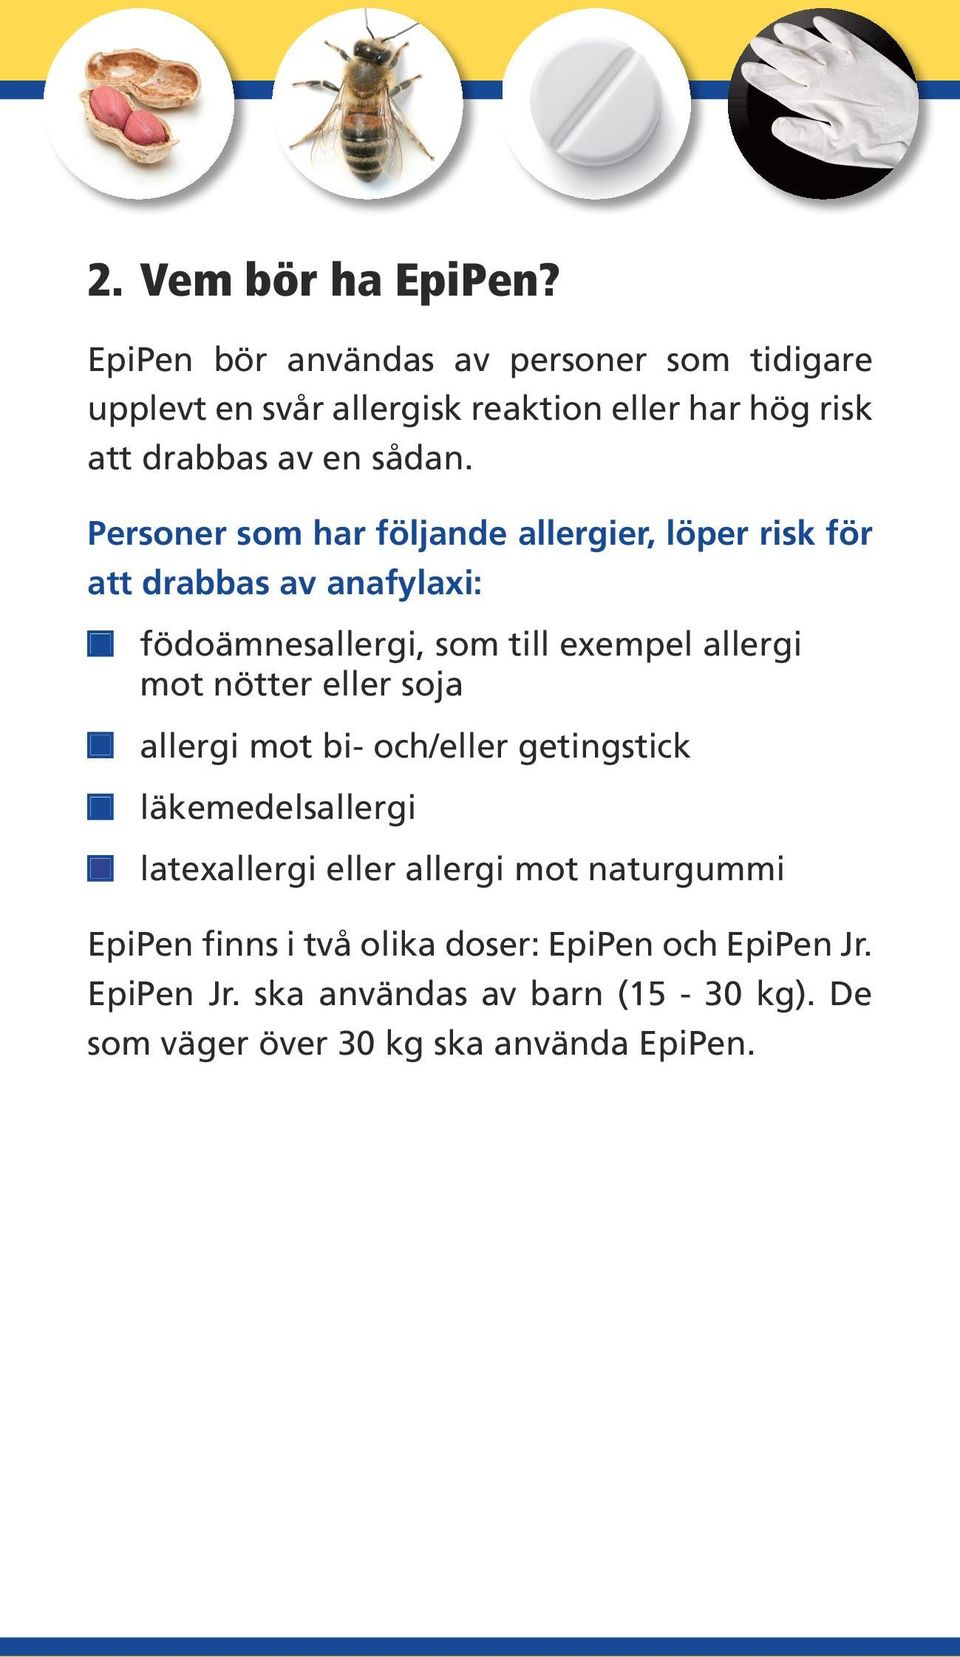 Personer som har följande allergier, löper risk för att drabbas av anafylaxi: födoämnesallergi, som till exempel allergi mot nötter